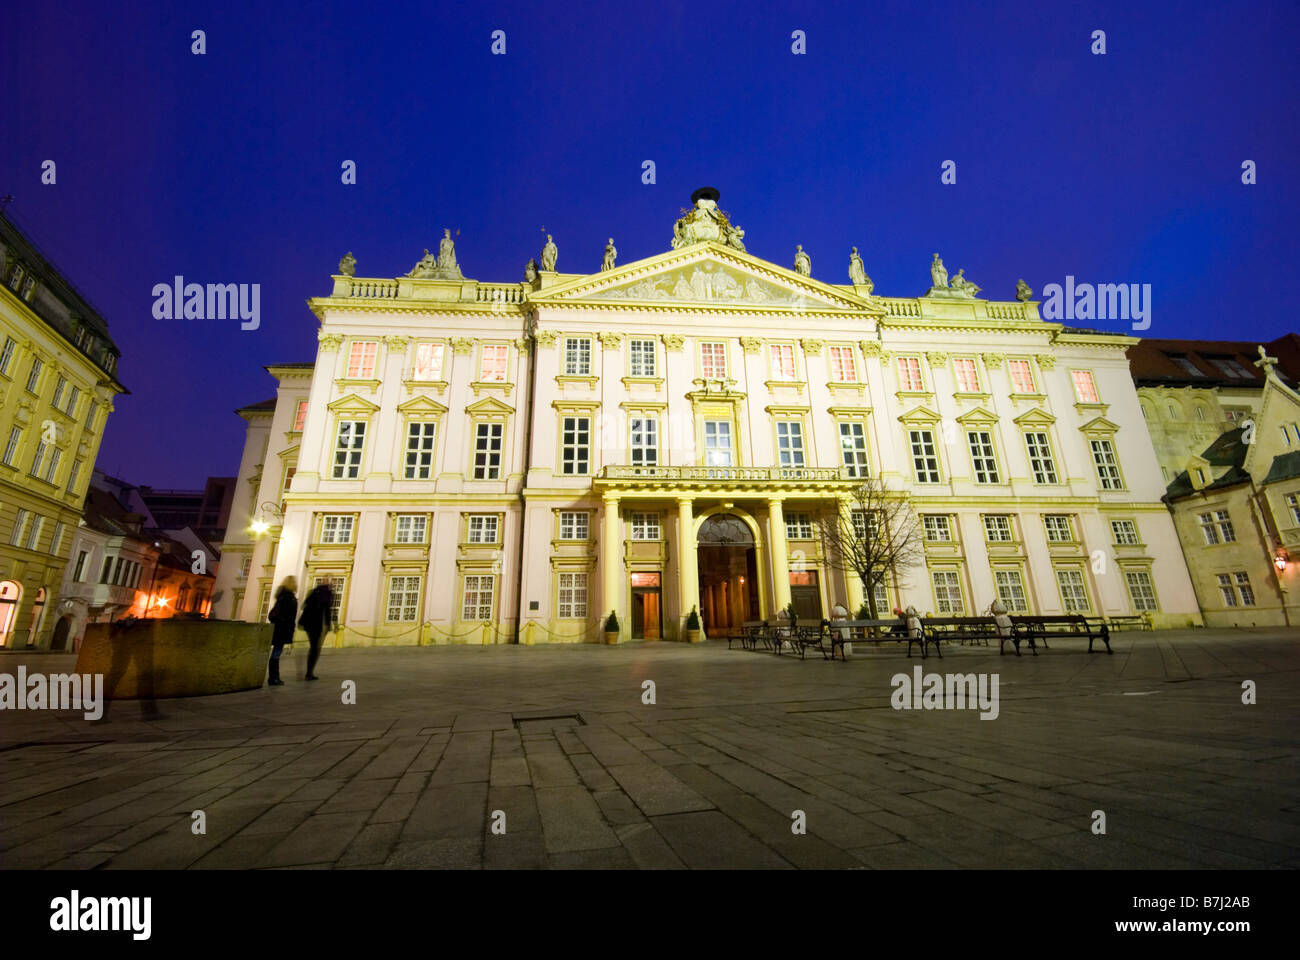 El palacio del primado (Primaciálny palác) en plaza Primaciálne rosa palacio neoclásico en Old Town, Bratislava, Eslovaquia Foto de stock